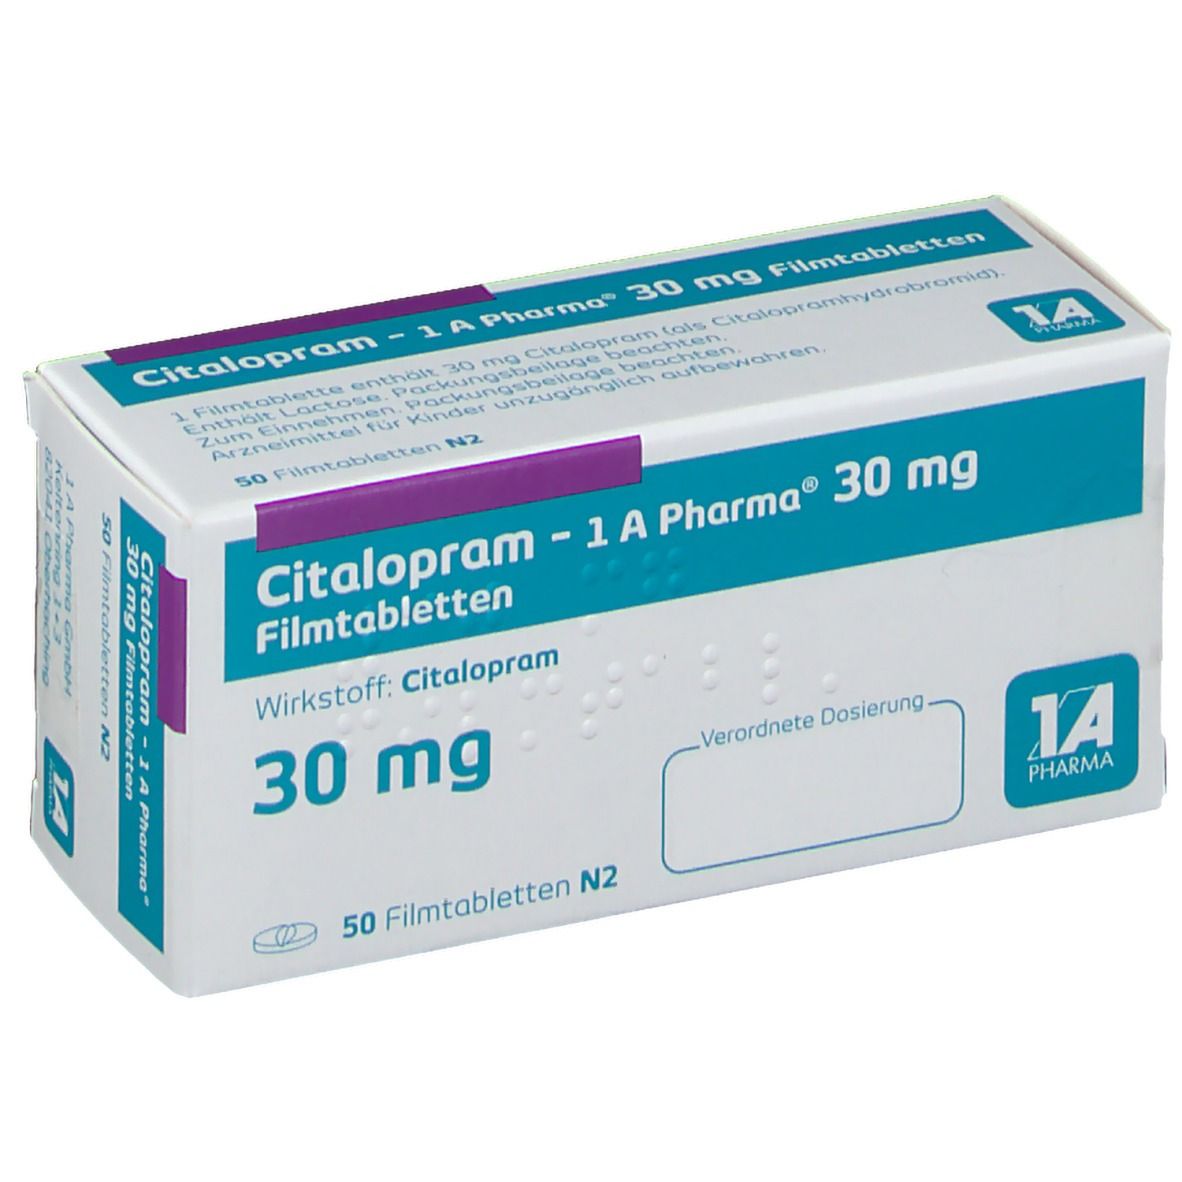 Citalopram 1A Pharma® 30Mg